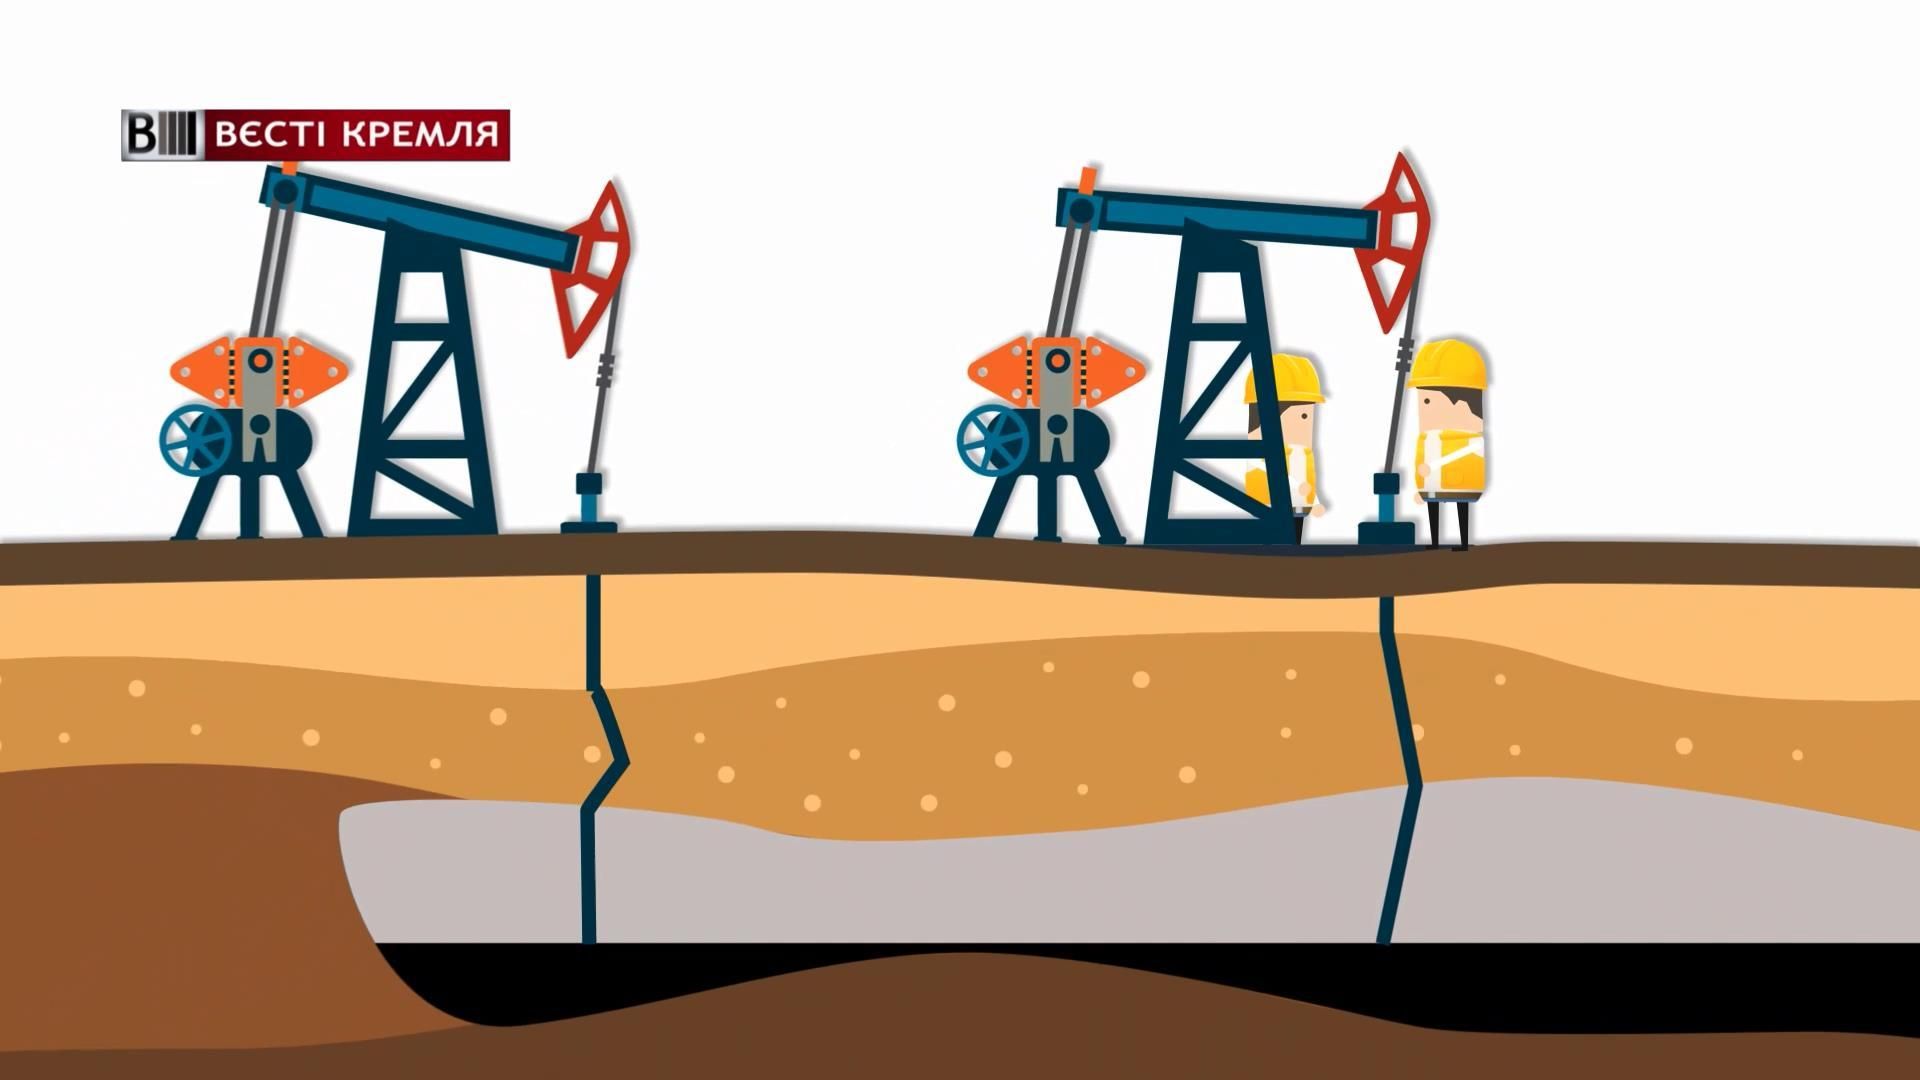 Конец "русской мечты": на сколько осталось нефти в России